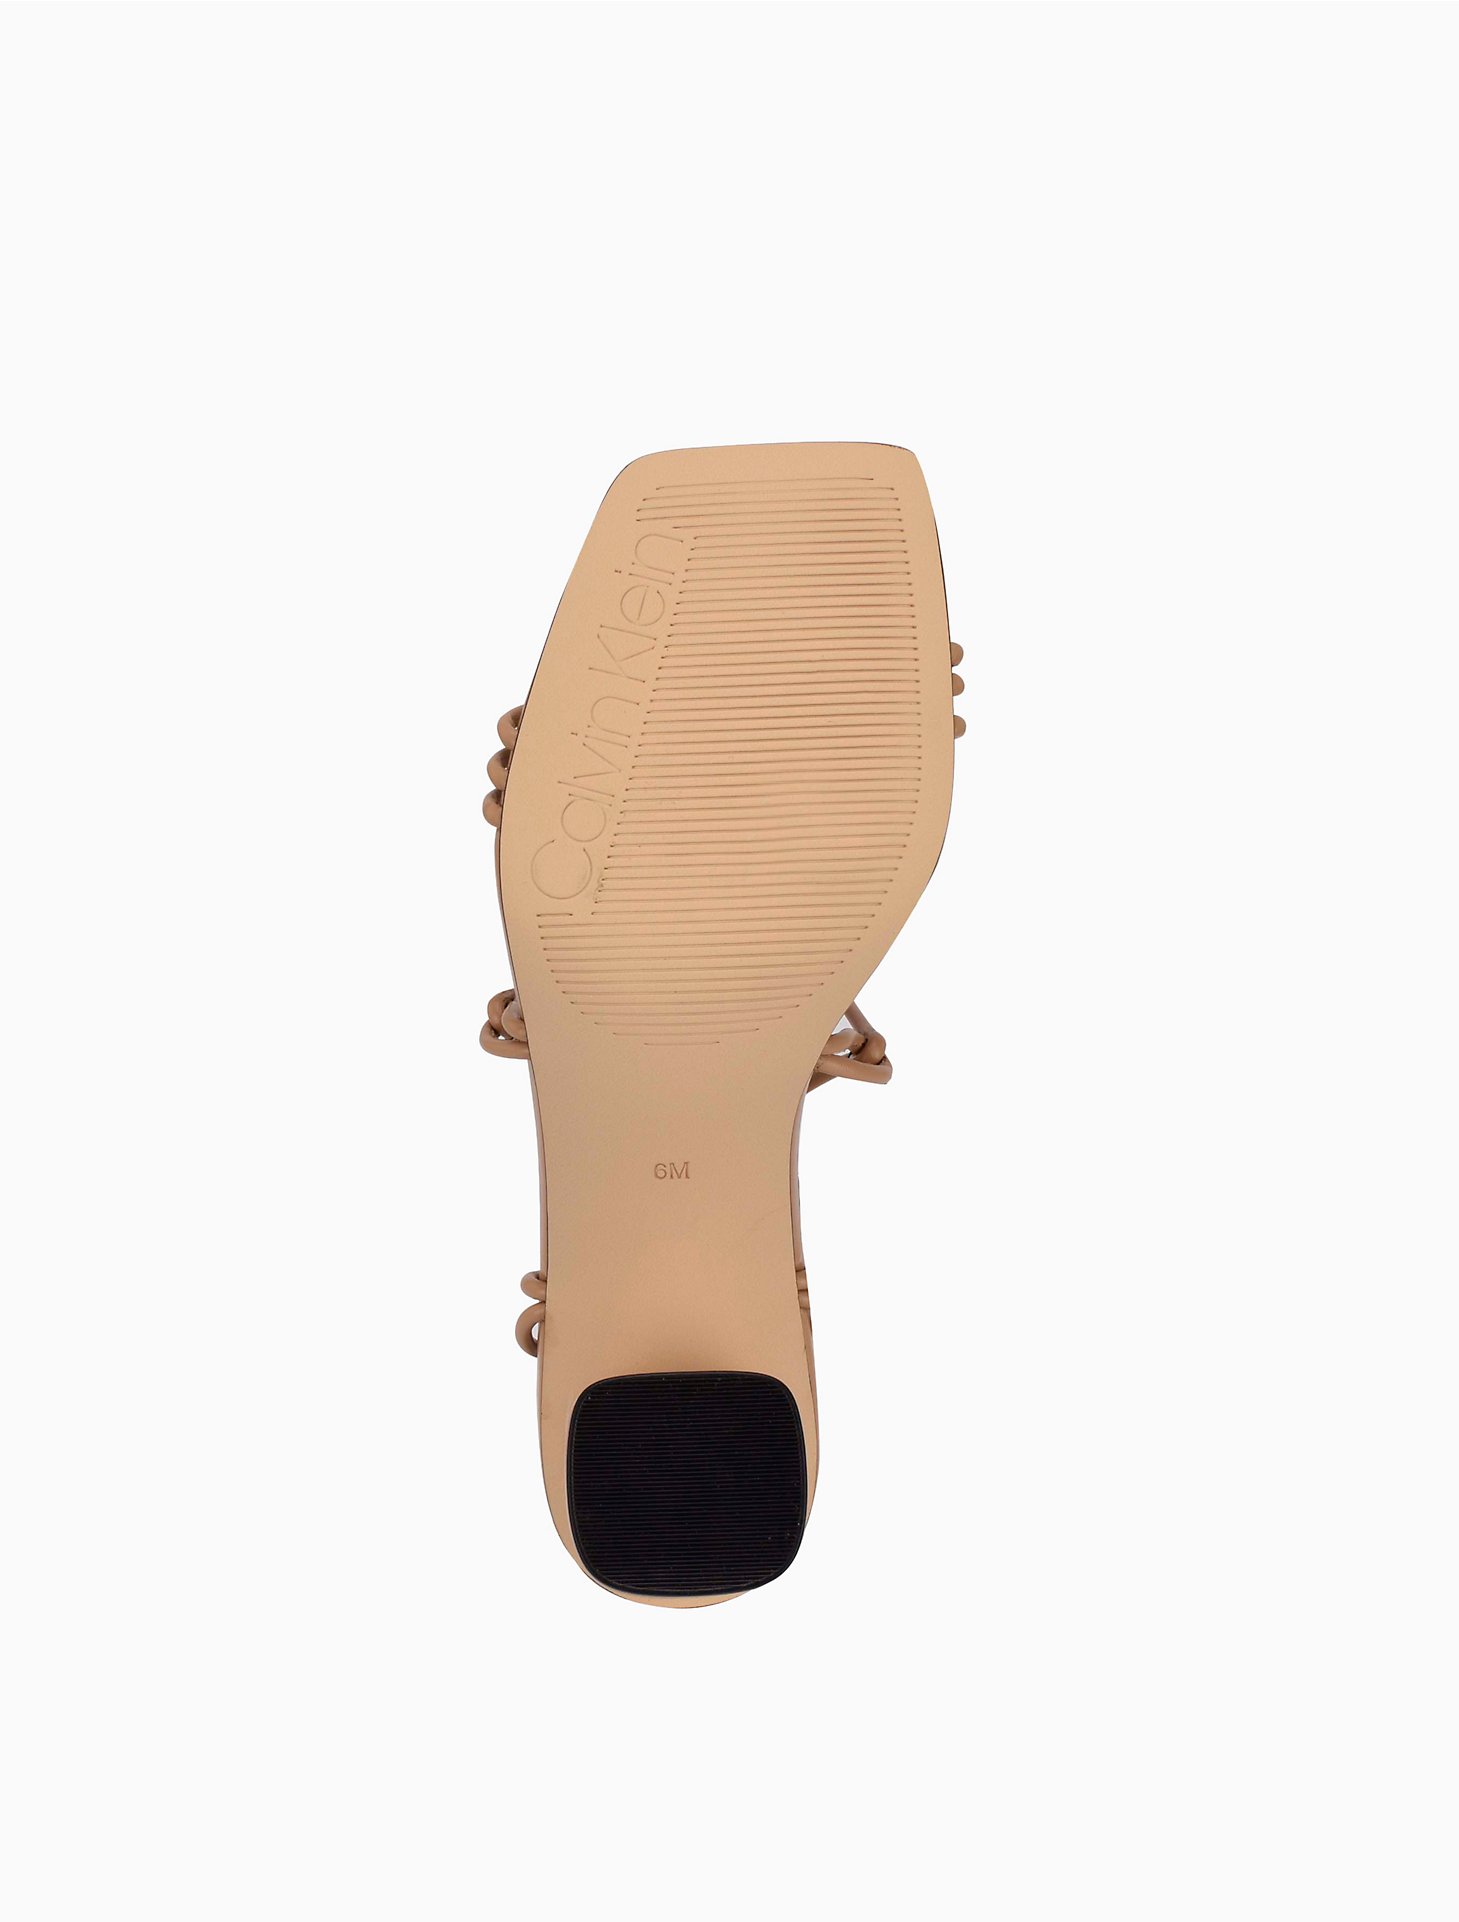 Calista High Heel Strappy Sandal | Calvin Klein® USA